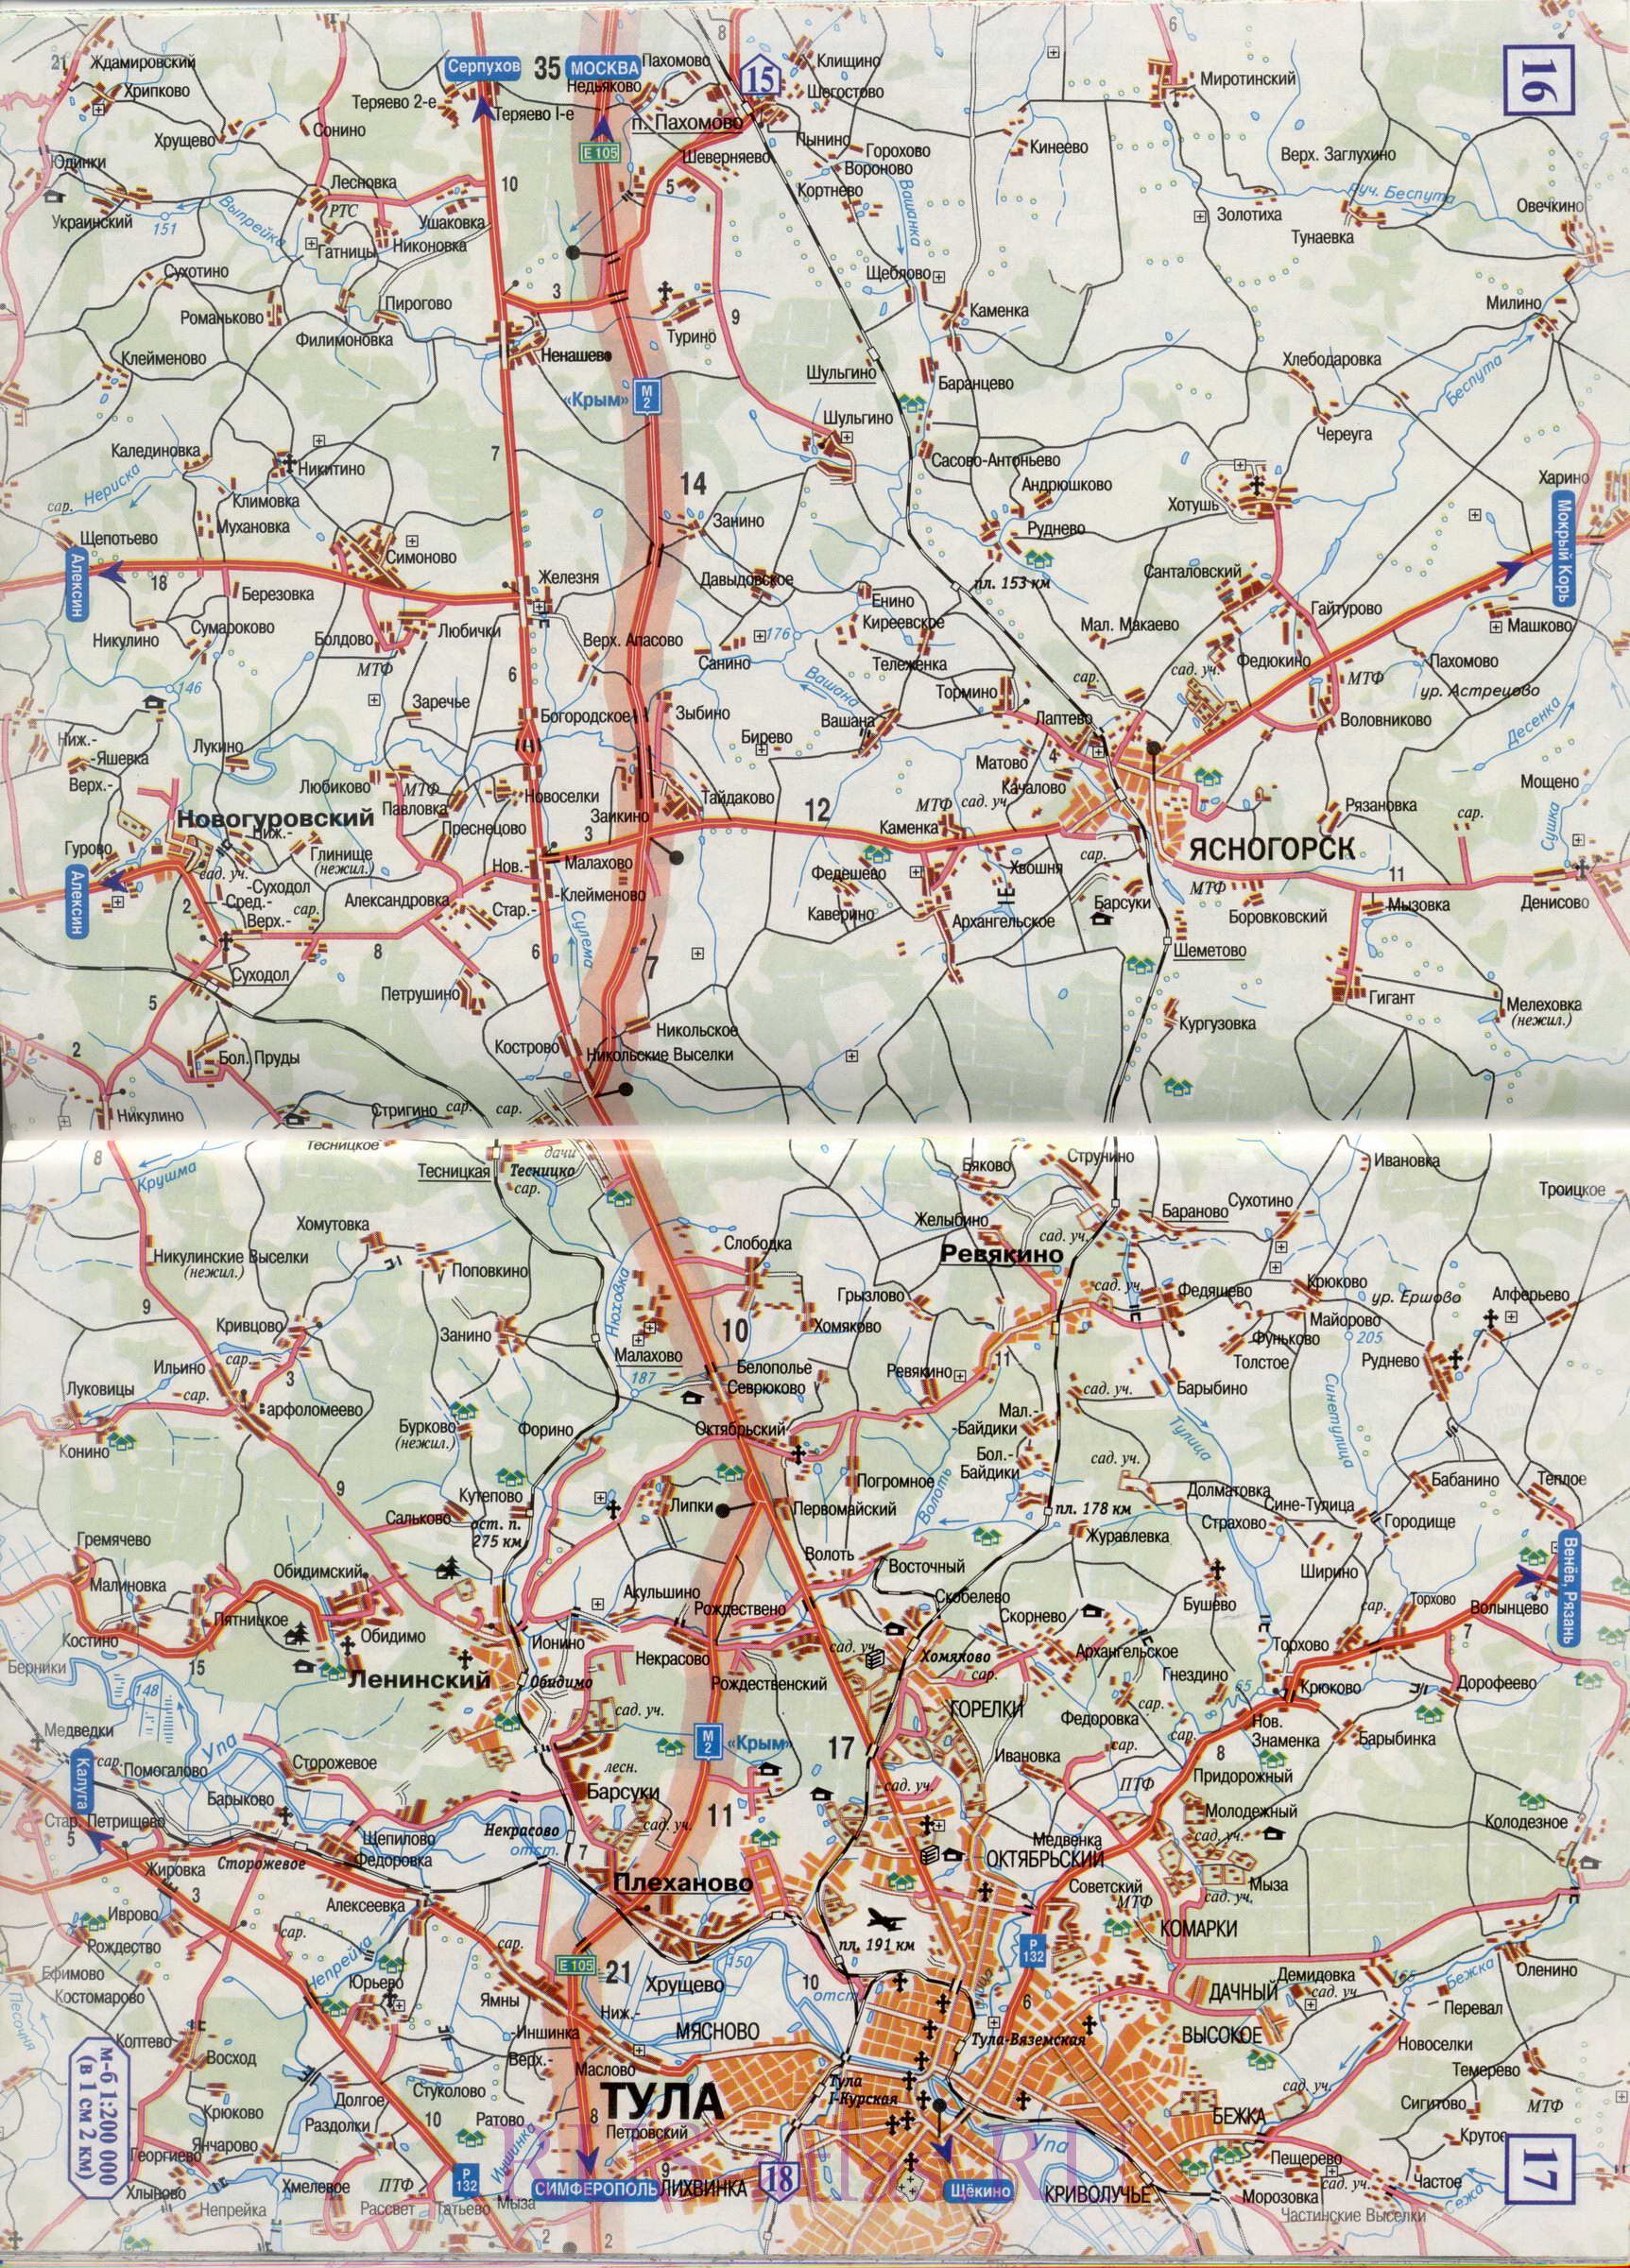 Карта Москва Тула. Подробная карта автомобильной трассы М2 от Москвы до Тулы - масштаб 1см:2км, A3 - 